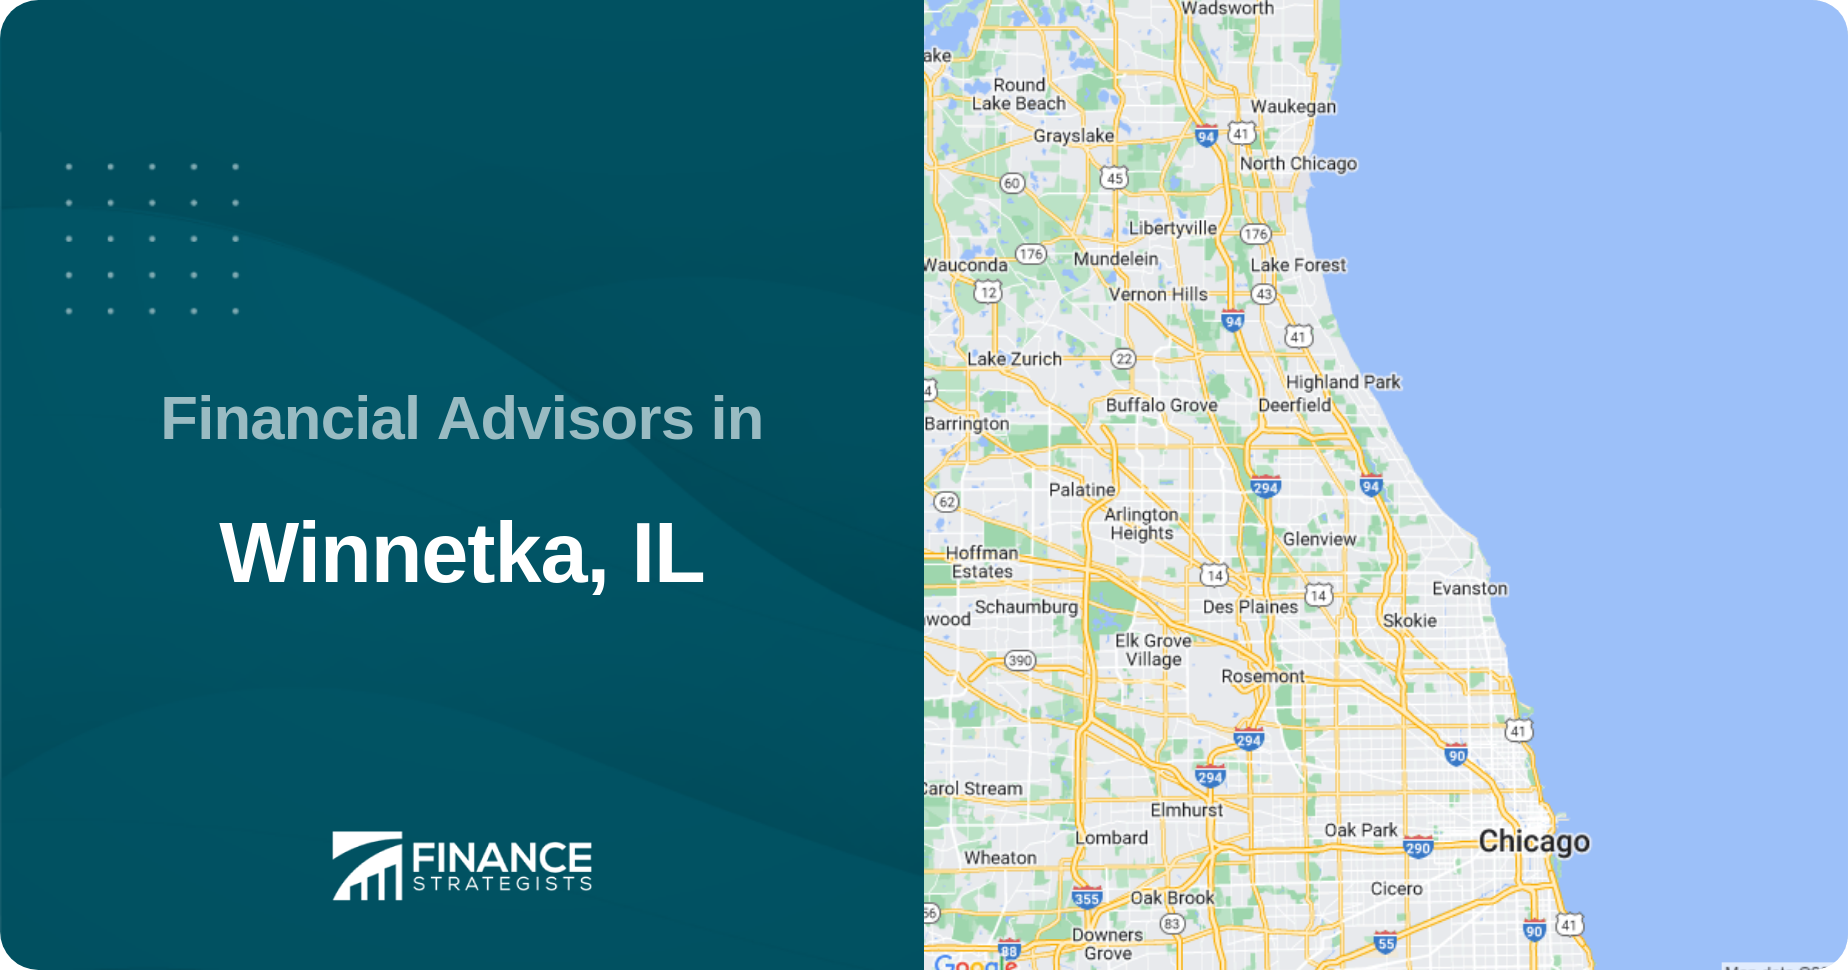 Financial Advisors in Winnetka, IL